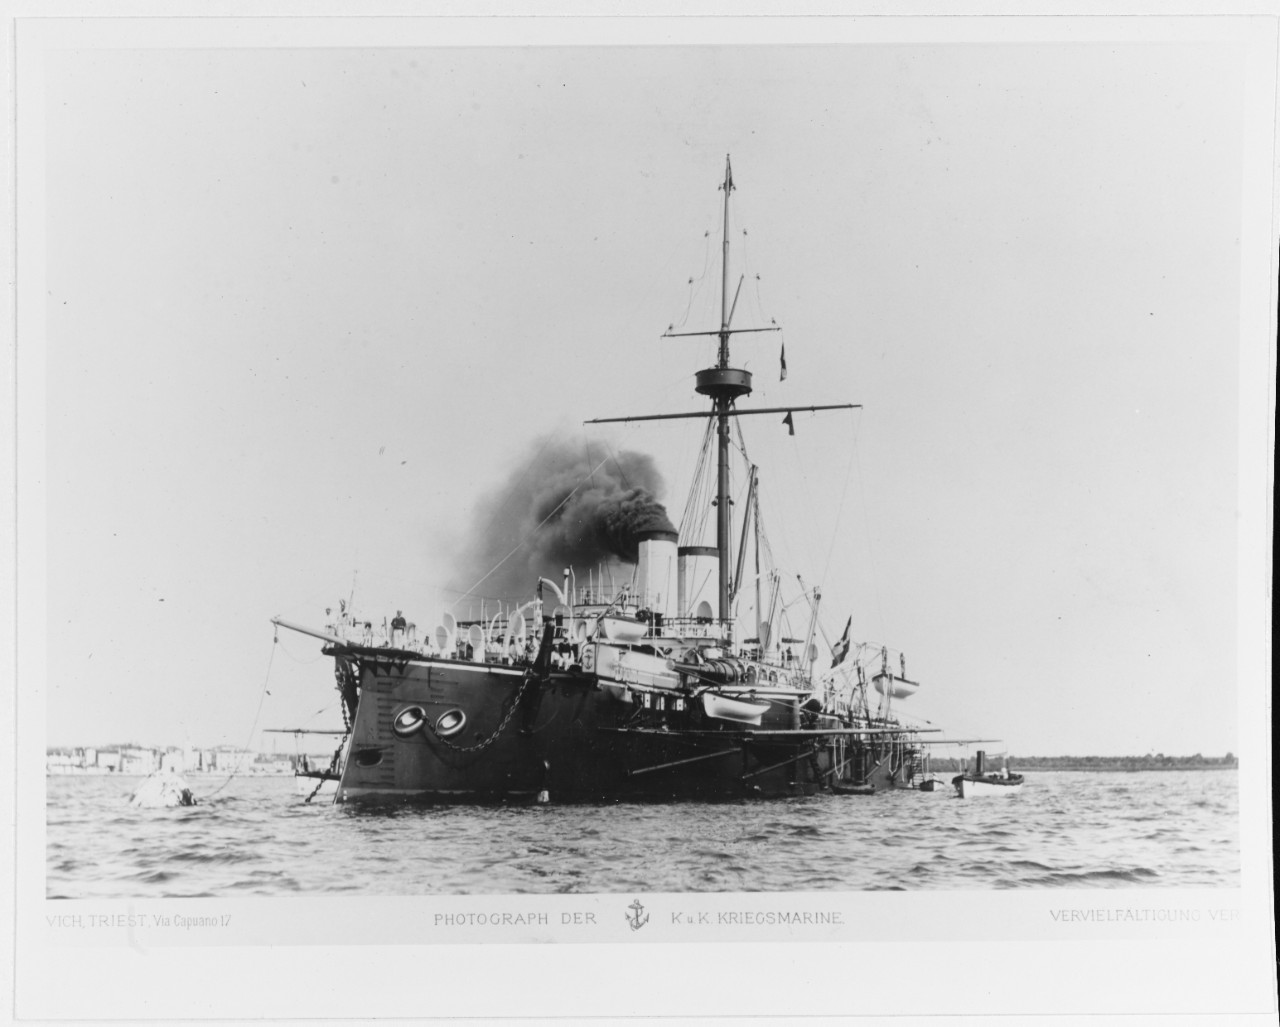 KRONPRINZ ERZHERZOG RUDOLF (Austrian battleship, 1887-1922)